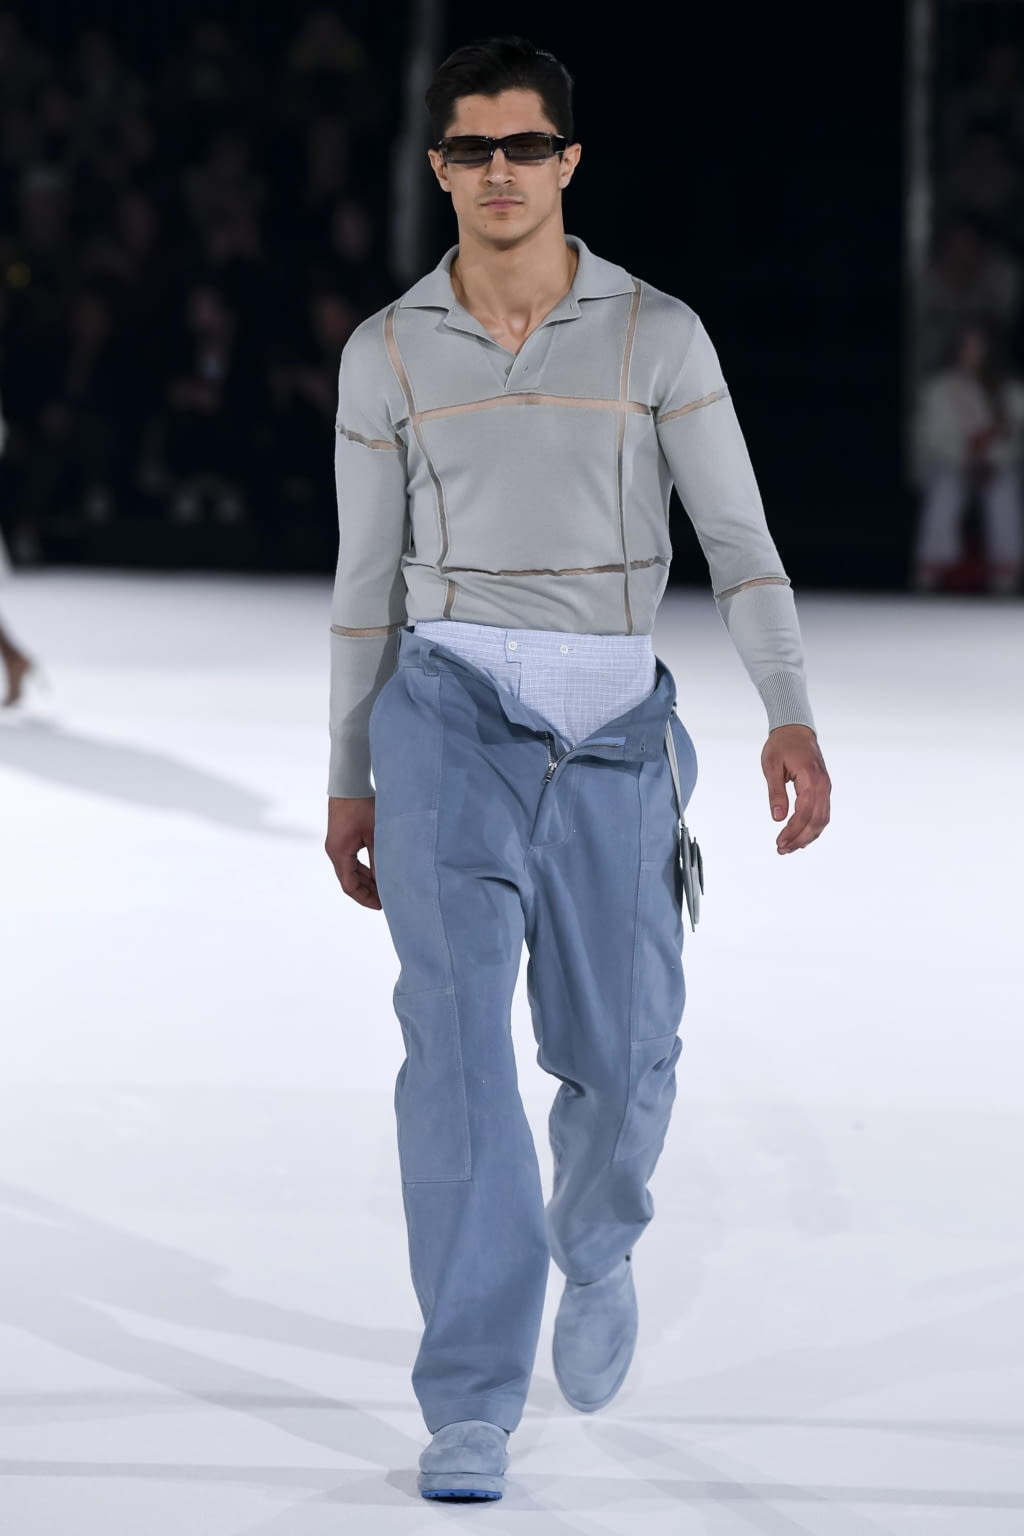 Jacquemus - Fall/Winter 2020 - Paris Fashion Week Men's